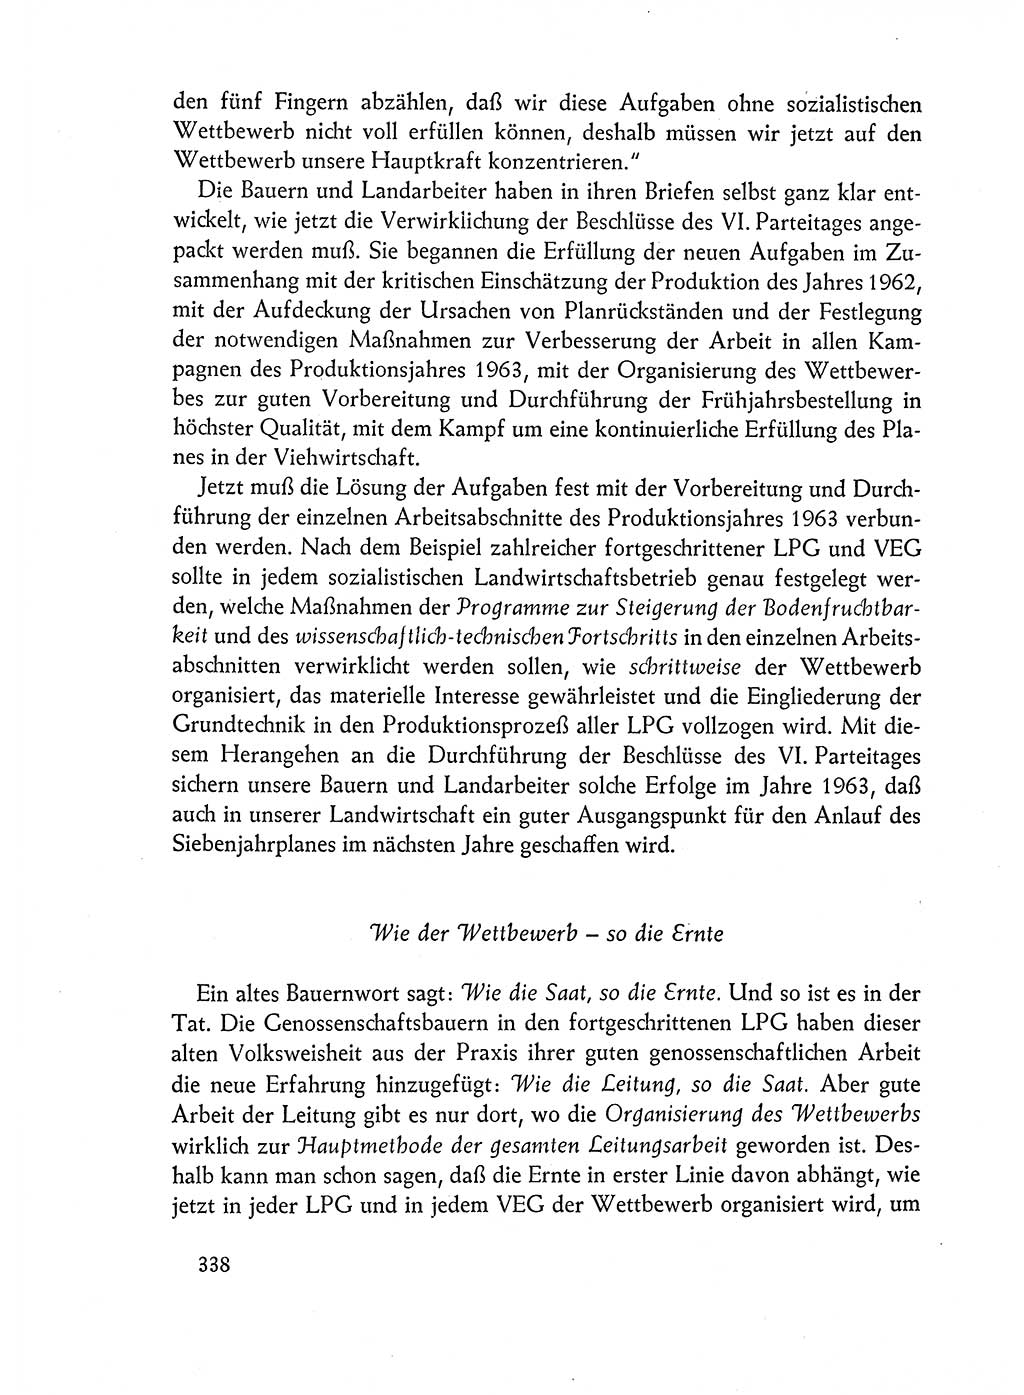 Dokumente der Sozialistischen Einheitspartei Deutschlands (SED) [Deutsche Demokratische Republik (DDR)] 1962-1963, Seite 338 (Dok. SED DDR 1962-1963, S. 338)